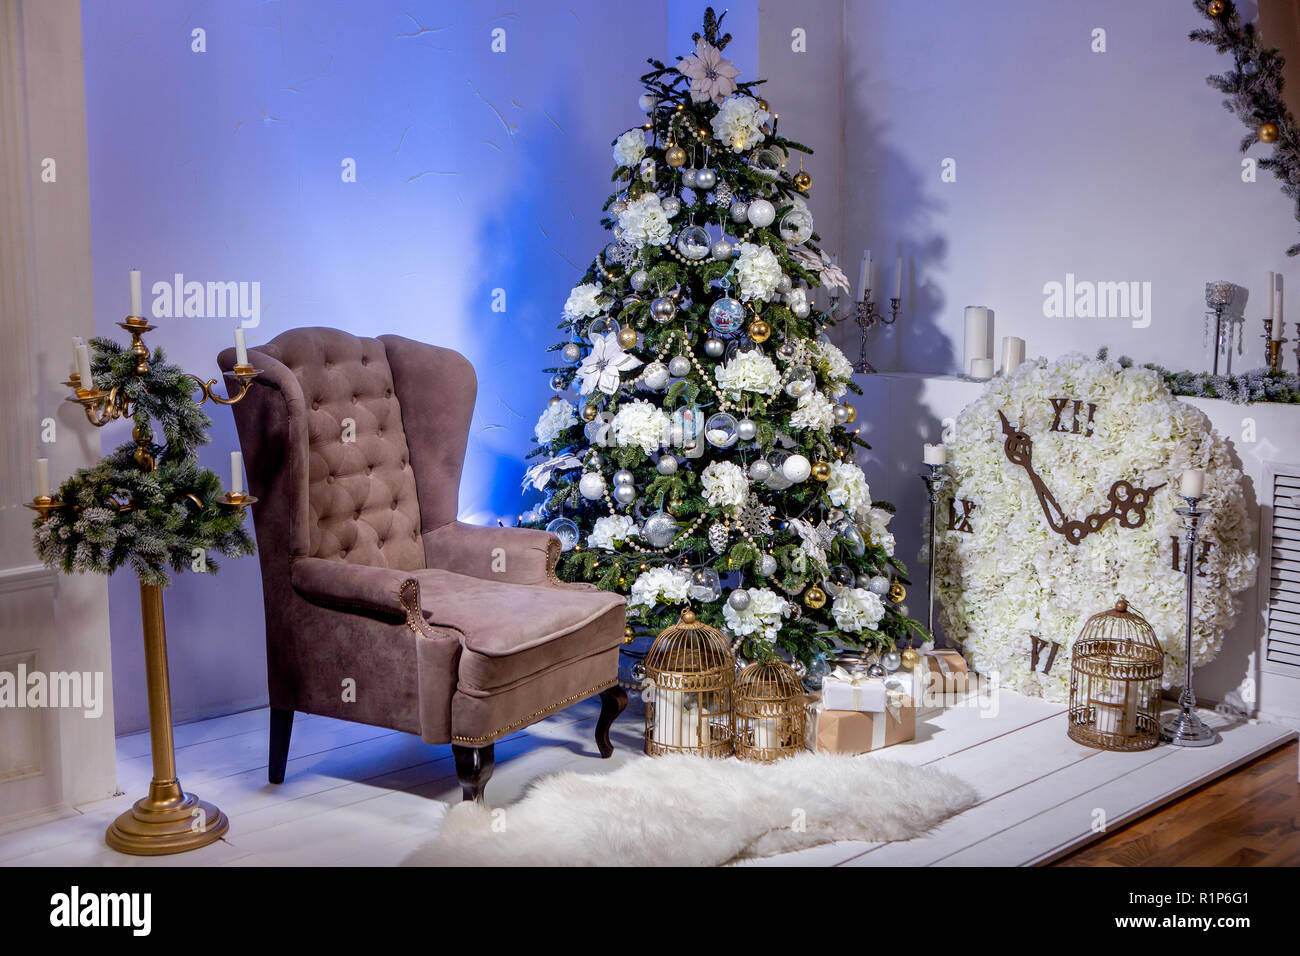 Natale camera decorata con poltrona marrone, grande orologio con fiori, candelabro con ghirlanda di abete e splendente albero di Natale con doni. Natale ev Foto Stock